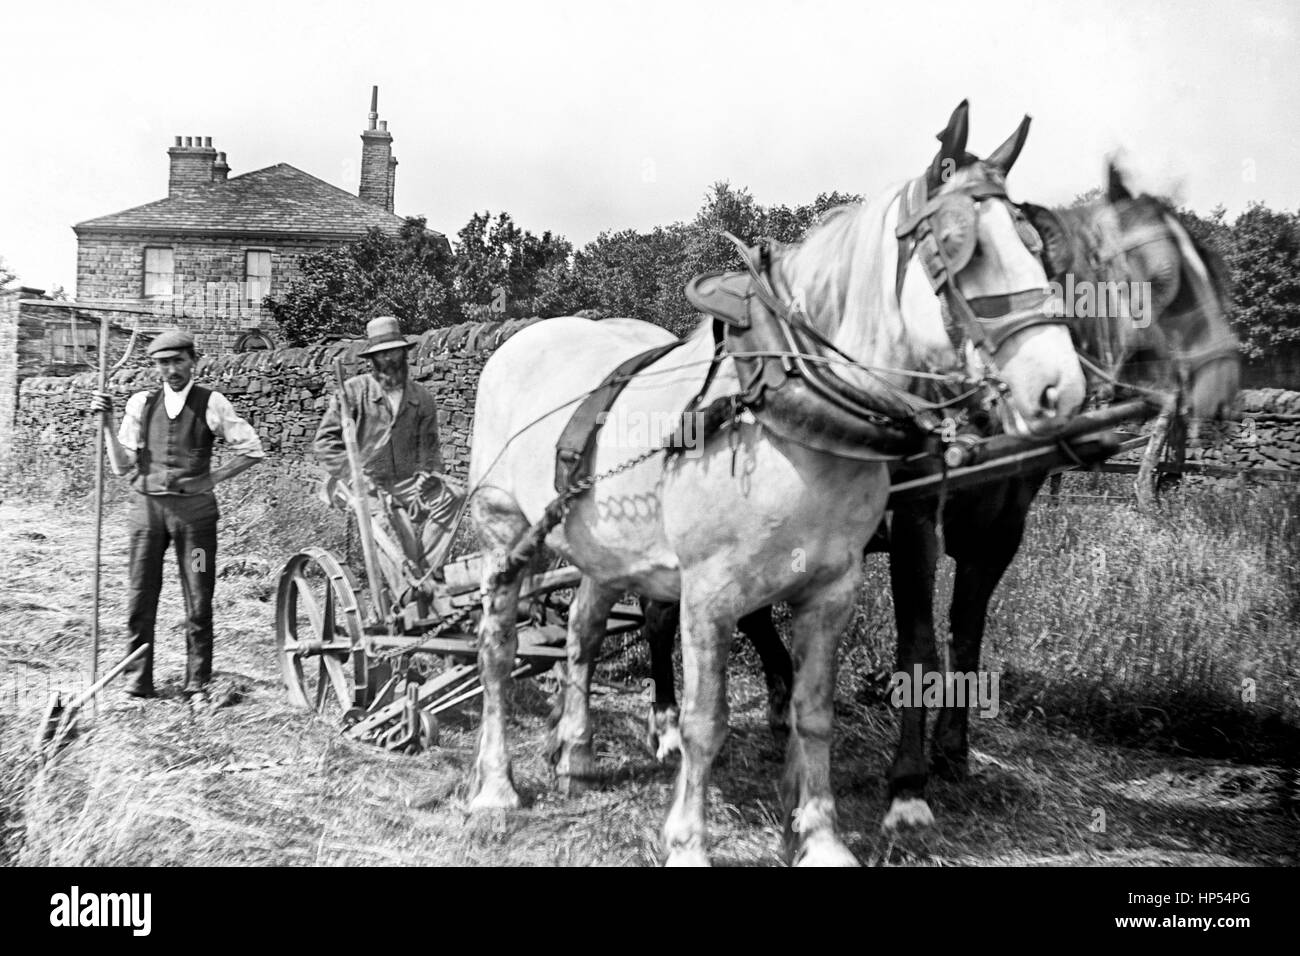 Ein Landwirt, auf der Maschine sitzt, in Keighley, Yorkshire zeigt seine neue Bamford Grass Cutter zu zwei Pferde vorgespannt. Ein Landarbeiter steht an der Seite der Maschine, die eine Holz- Dreigleisigen pitchfork. Auf der Rückseite und über die Hecke ist das Bauernhaus. Noch im Jahre 1900, aus einer hochauflösenden restauriert von der original viktorianischen negative zu scannen. Stockfoto